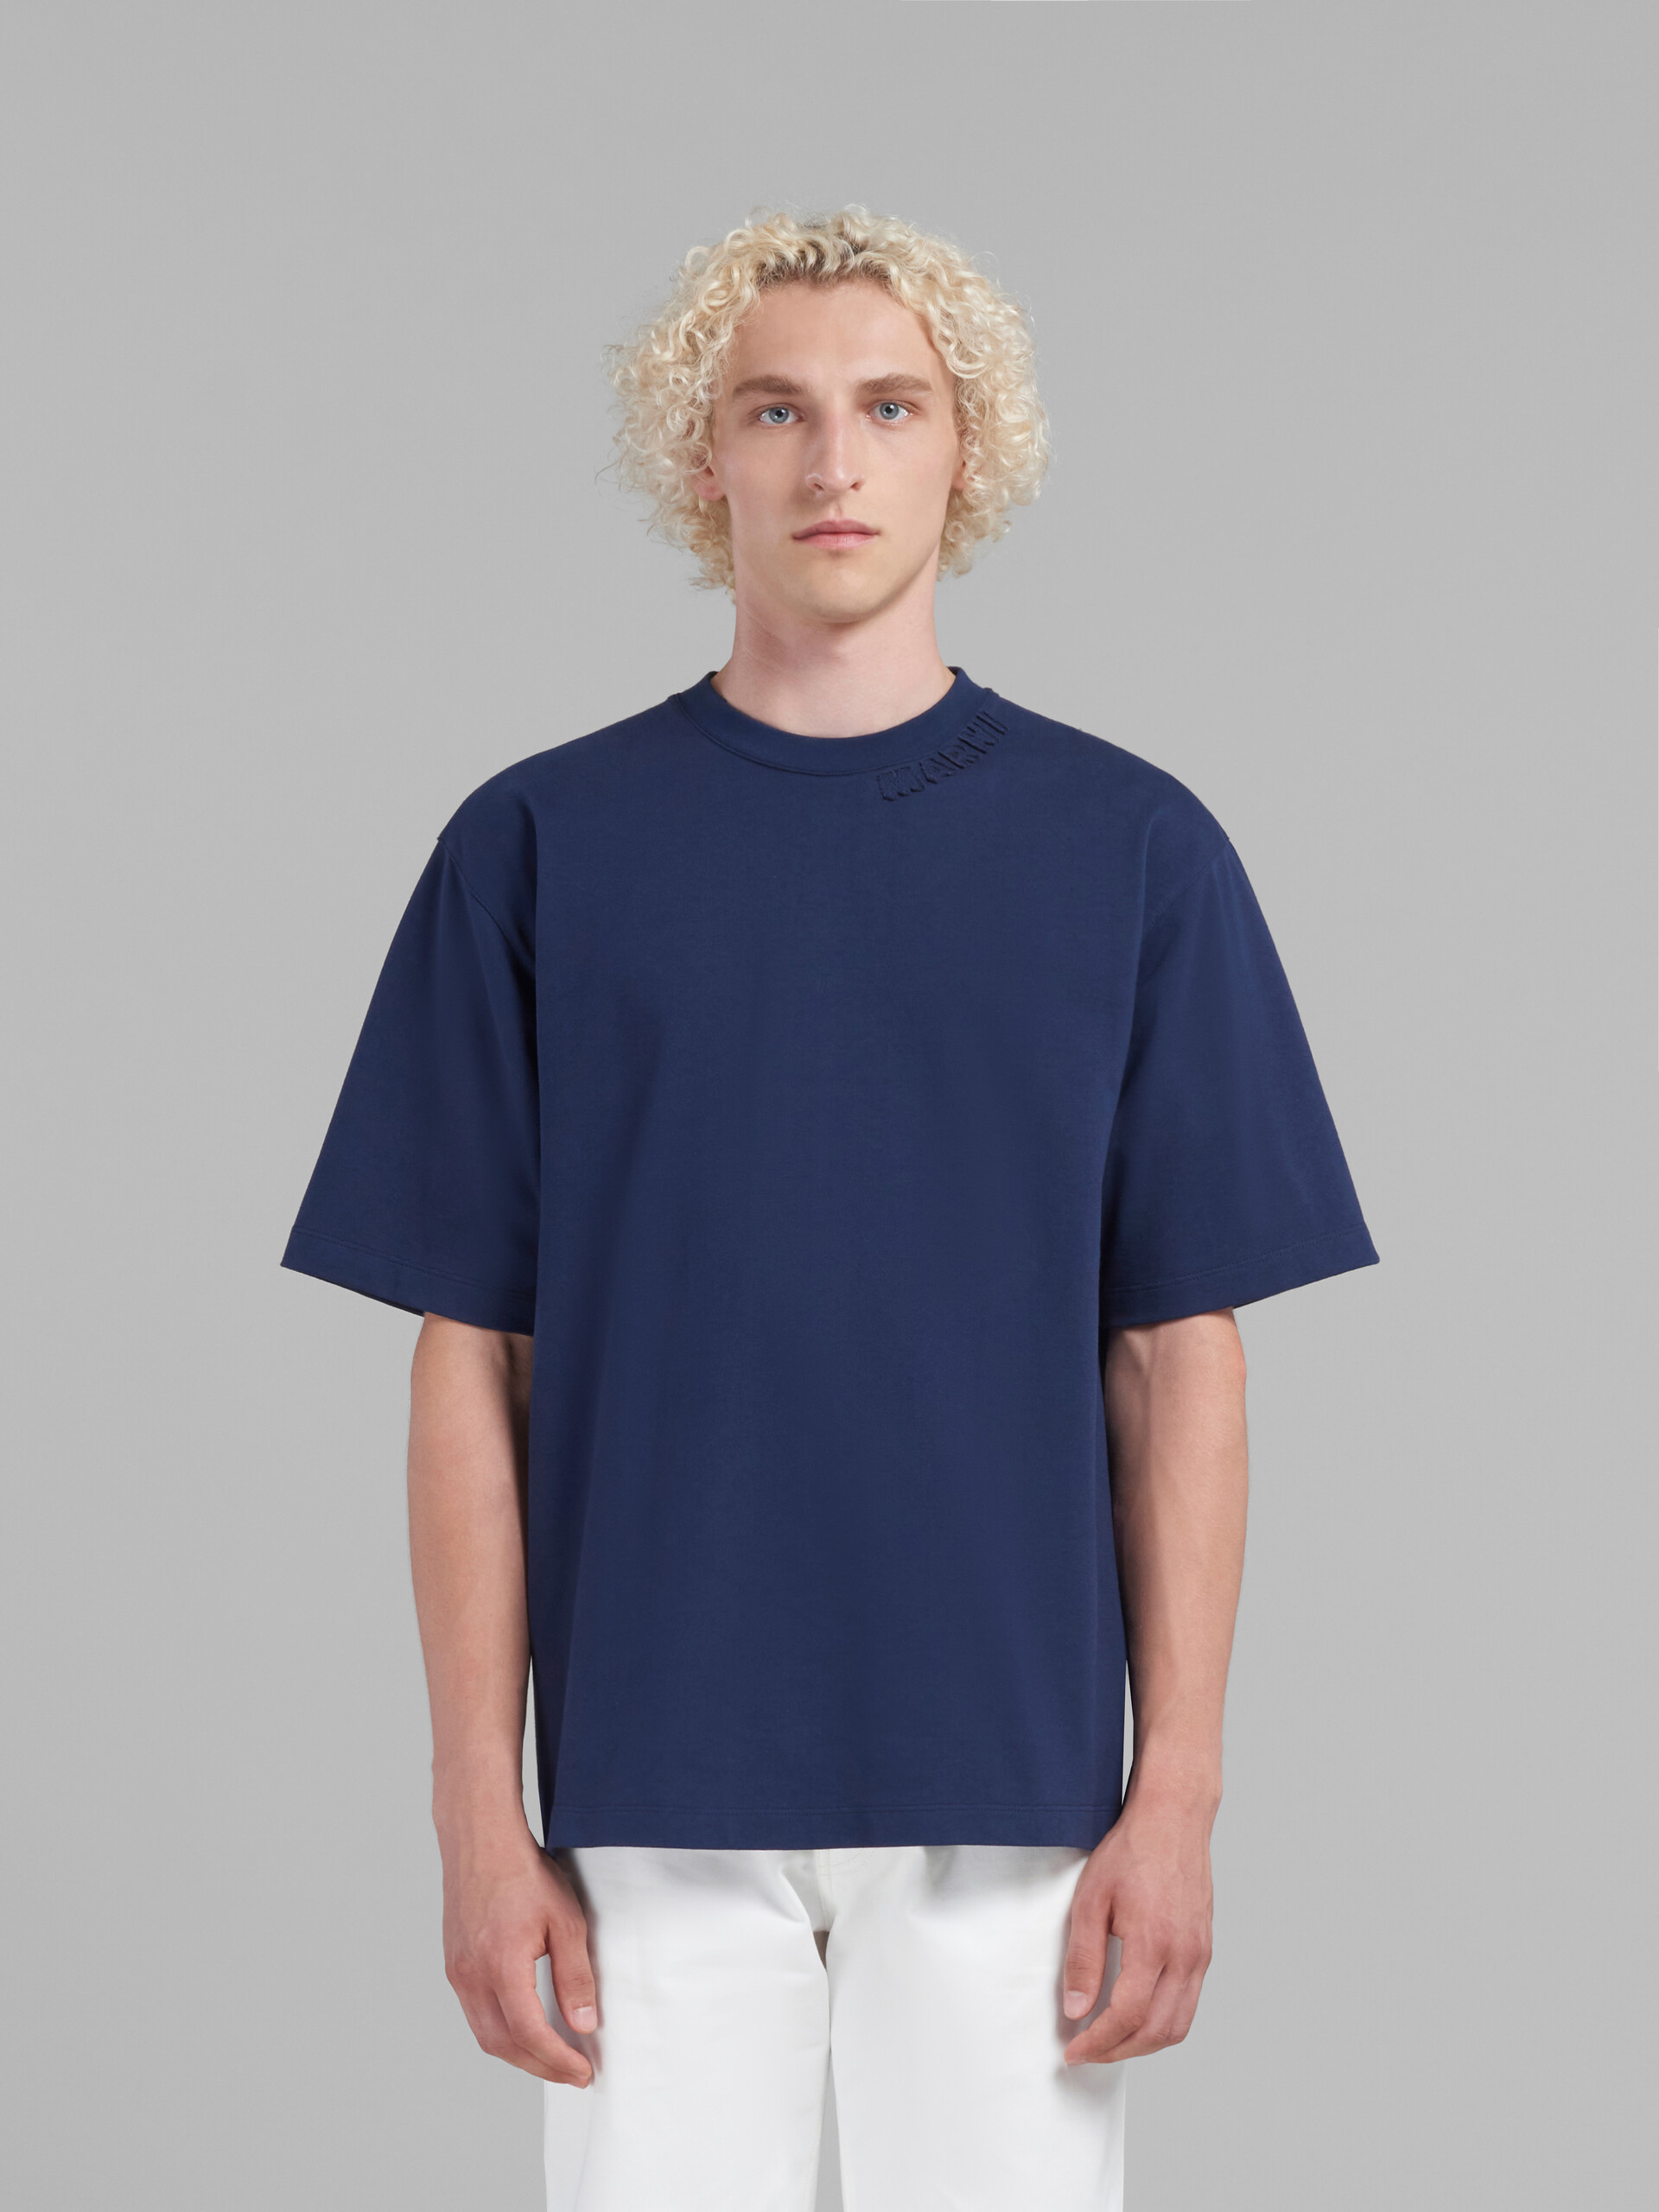 ブルー マルニパッチ付き オーガニックコットン製オーバーサイズTシャツ